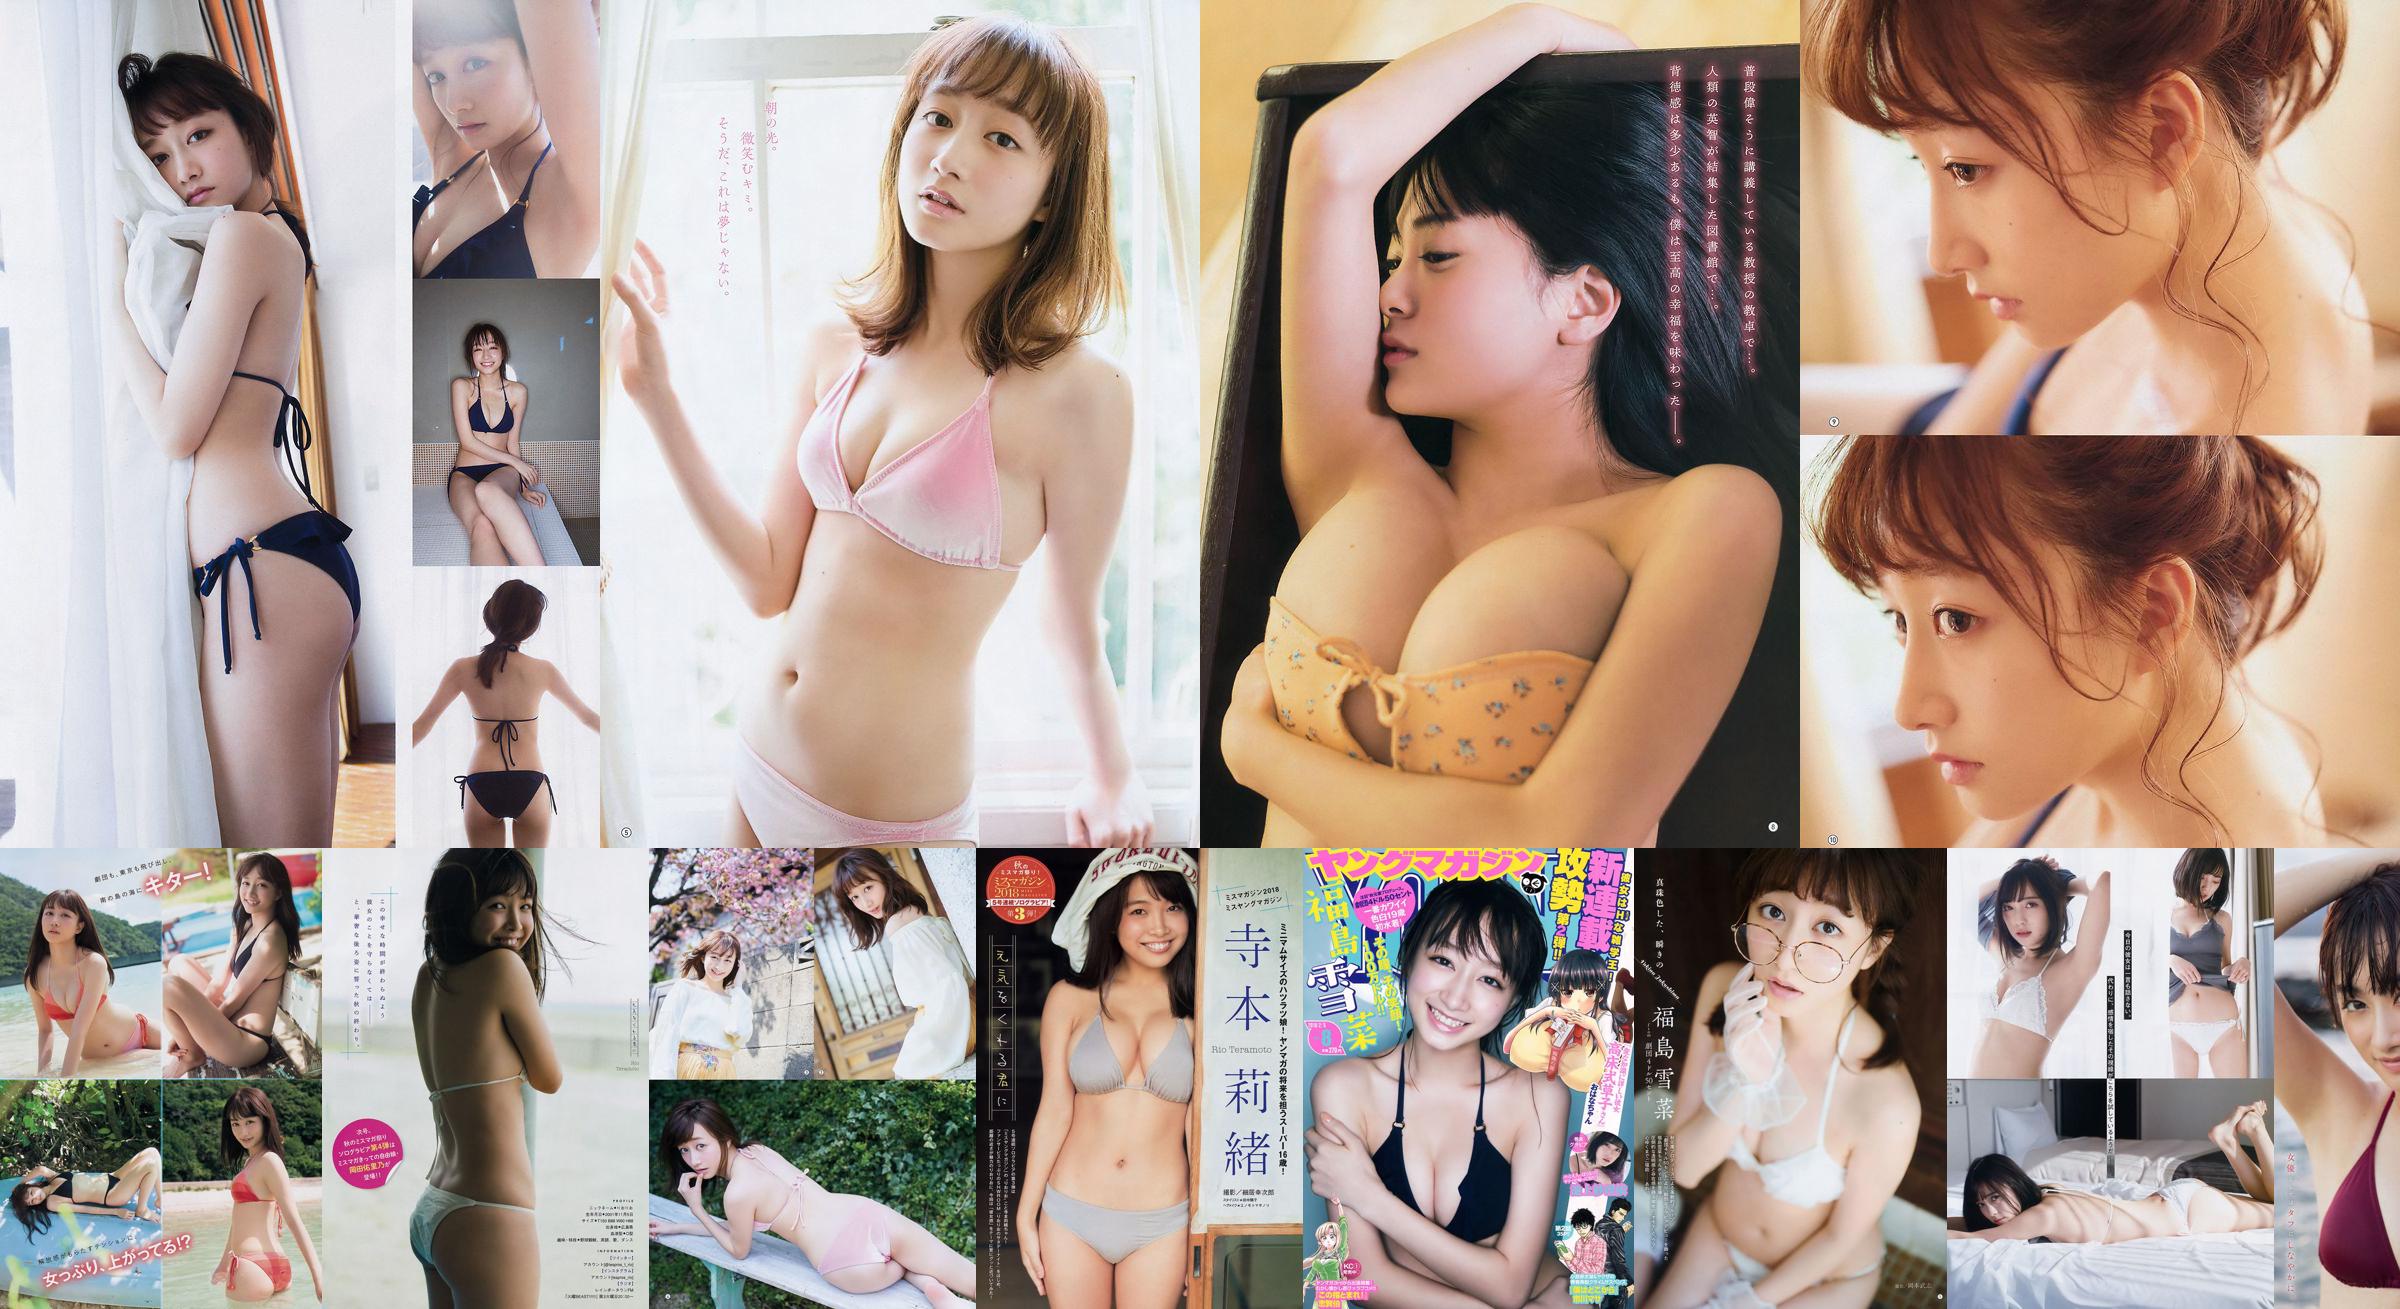 [Young Gangan] Yukina Fukushima RaMu 2018 No.10 Photograph No.6d523b หน้า 8